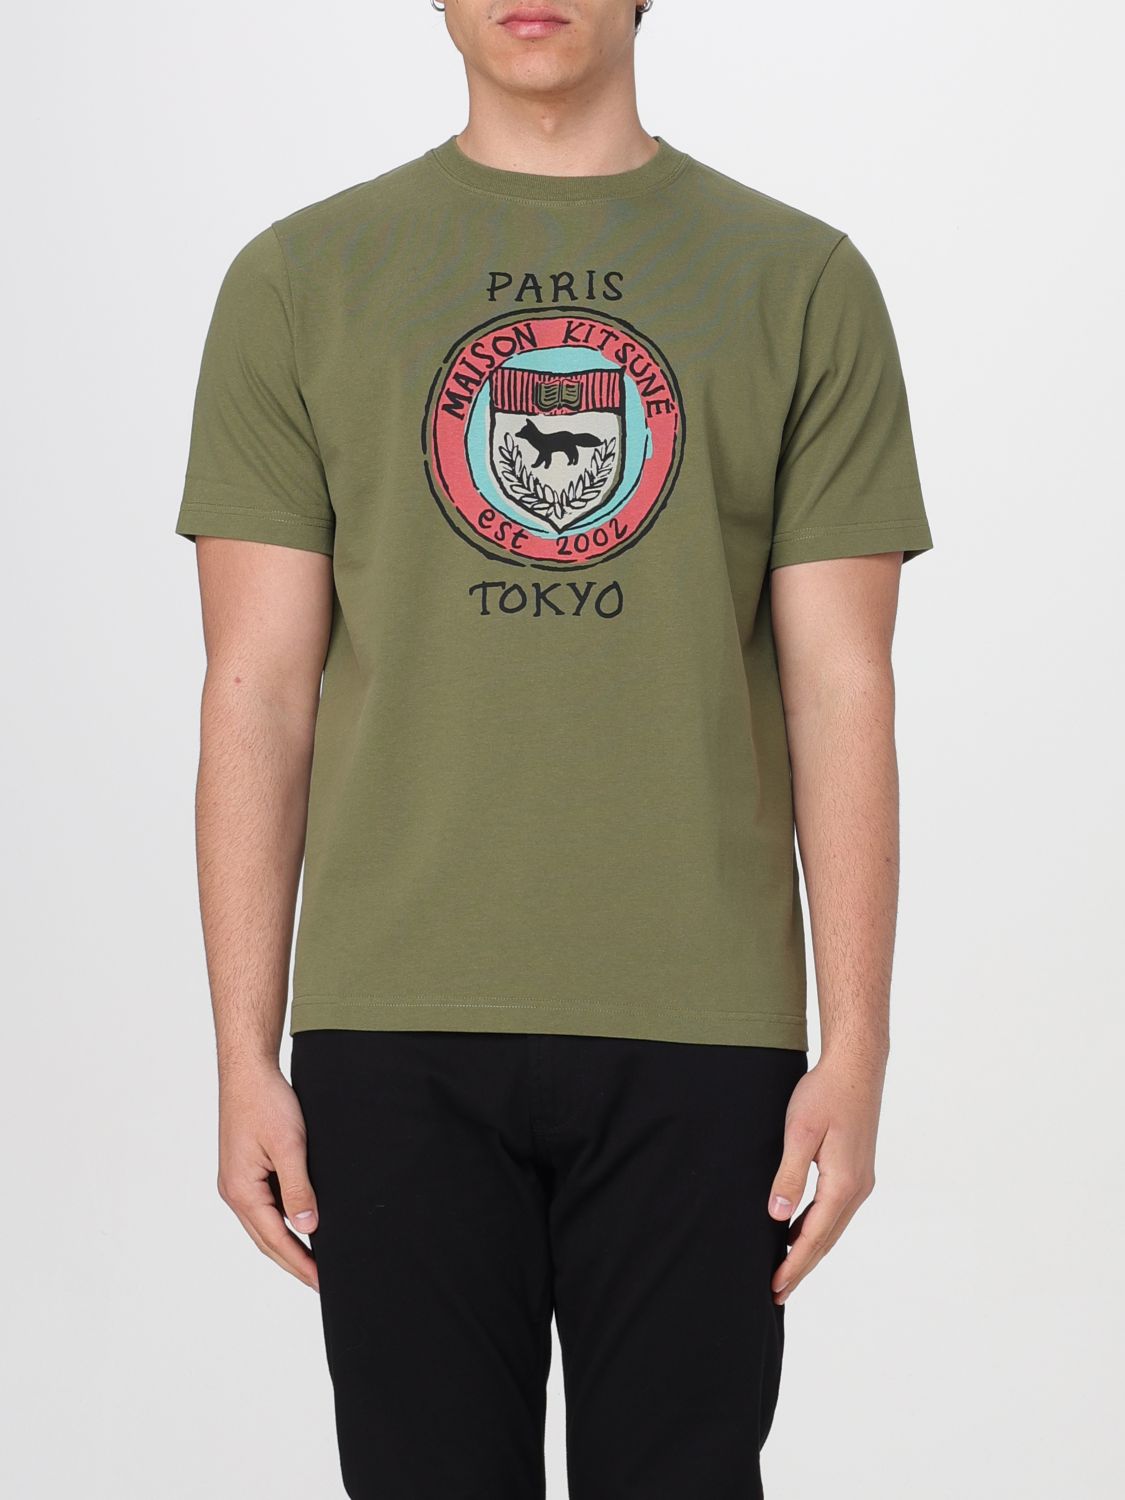 Maison Kitsuné T-Shirt MAISON KITSUNÉ Men color Military